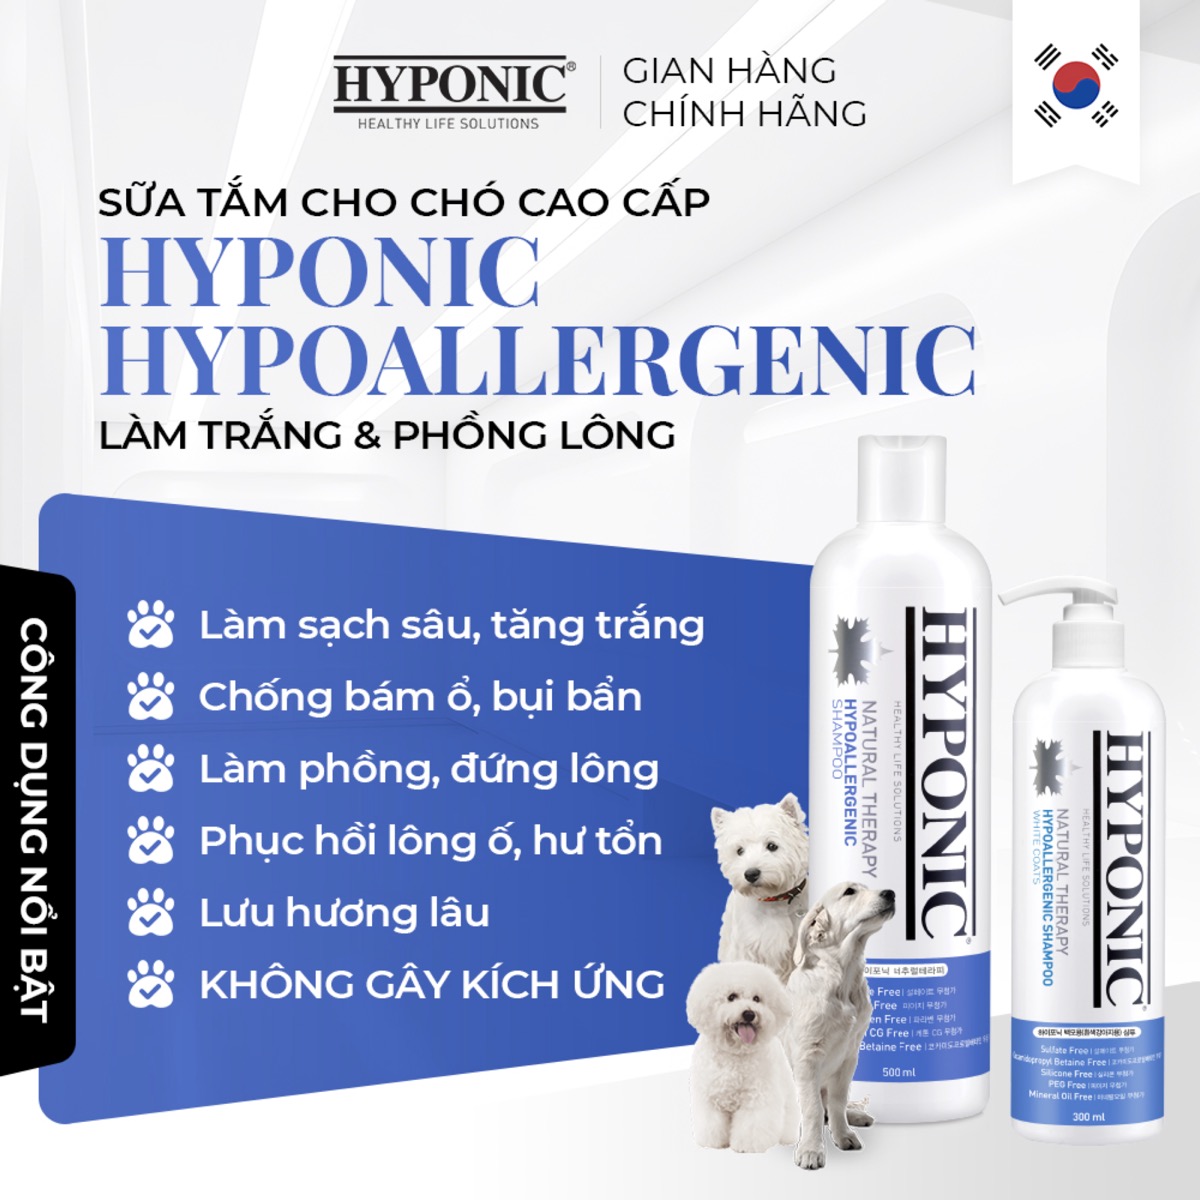 Sữa tắm cho chó cao cấp HYPONIC Hypoallergenic, làm trắng & phồng lông